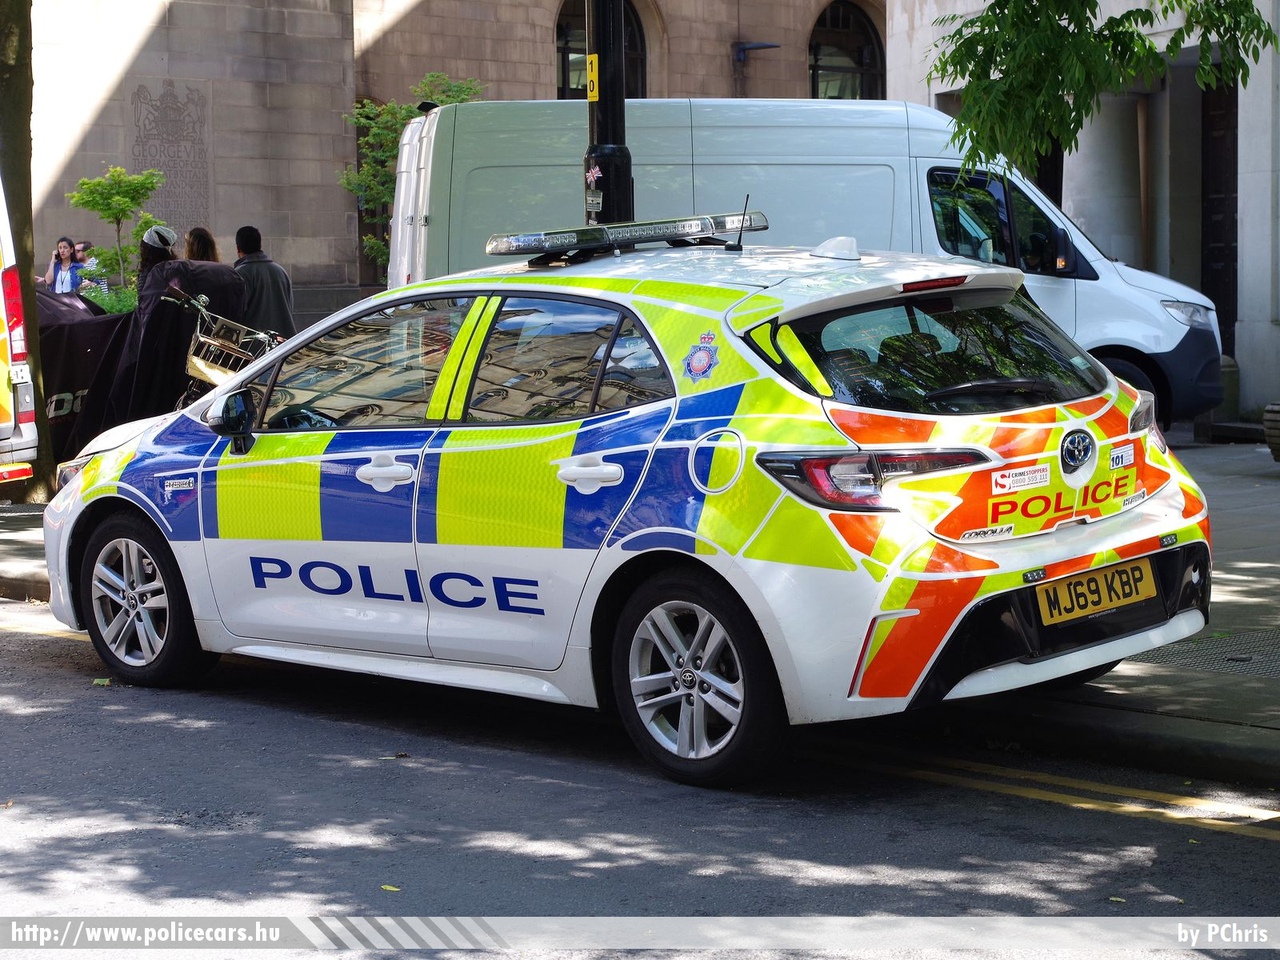 Toyota Corolla, fotó: PChris
Keywords: angol Anglia rendőr rendőrautó rendőrség english England police policecar